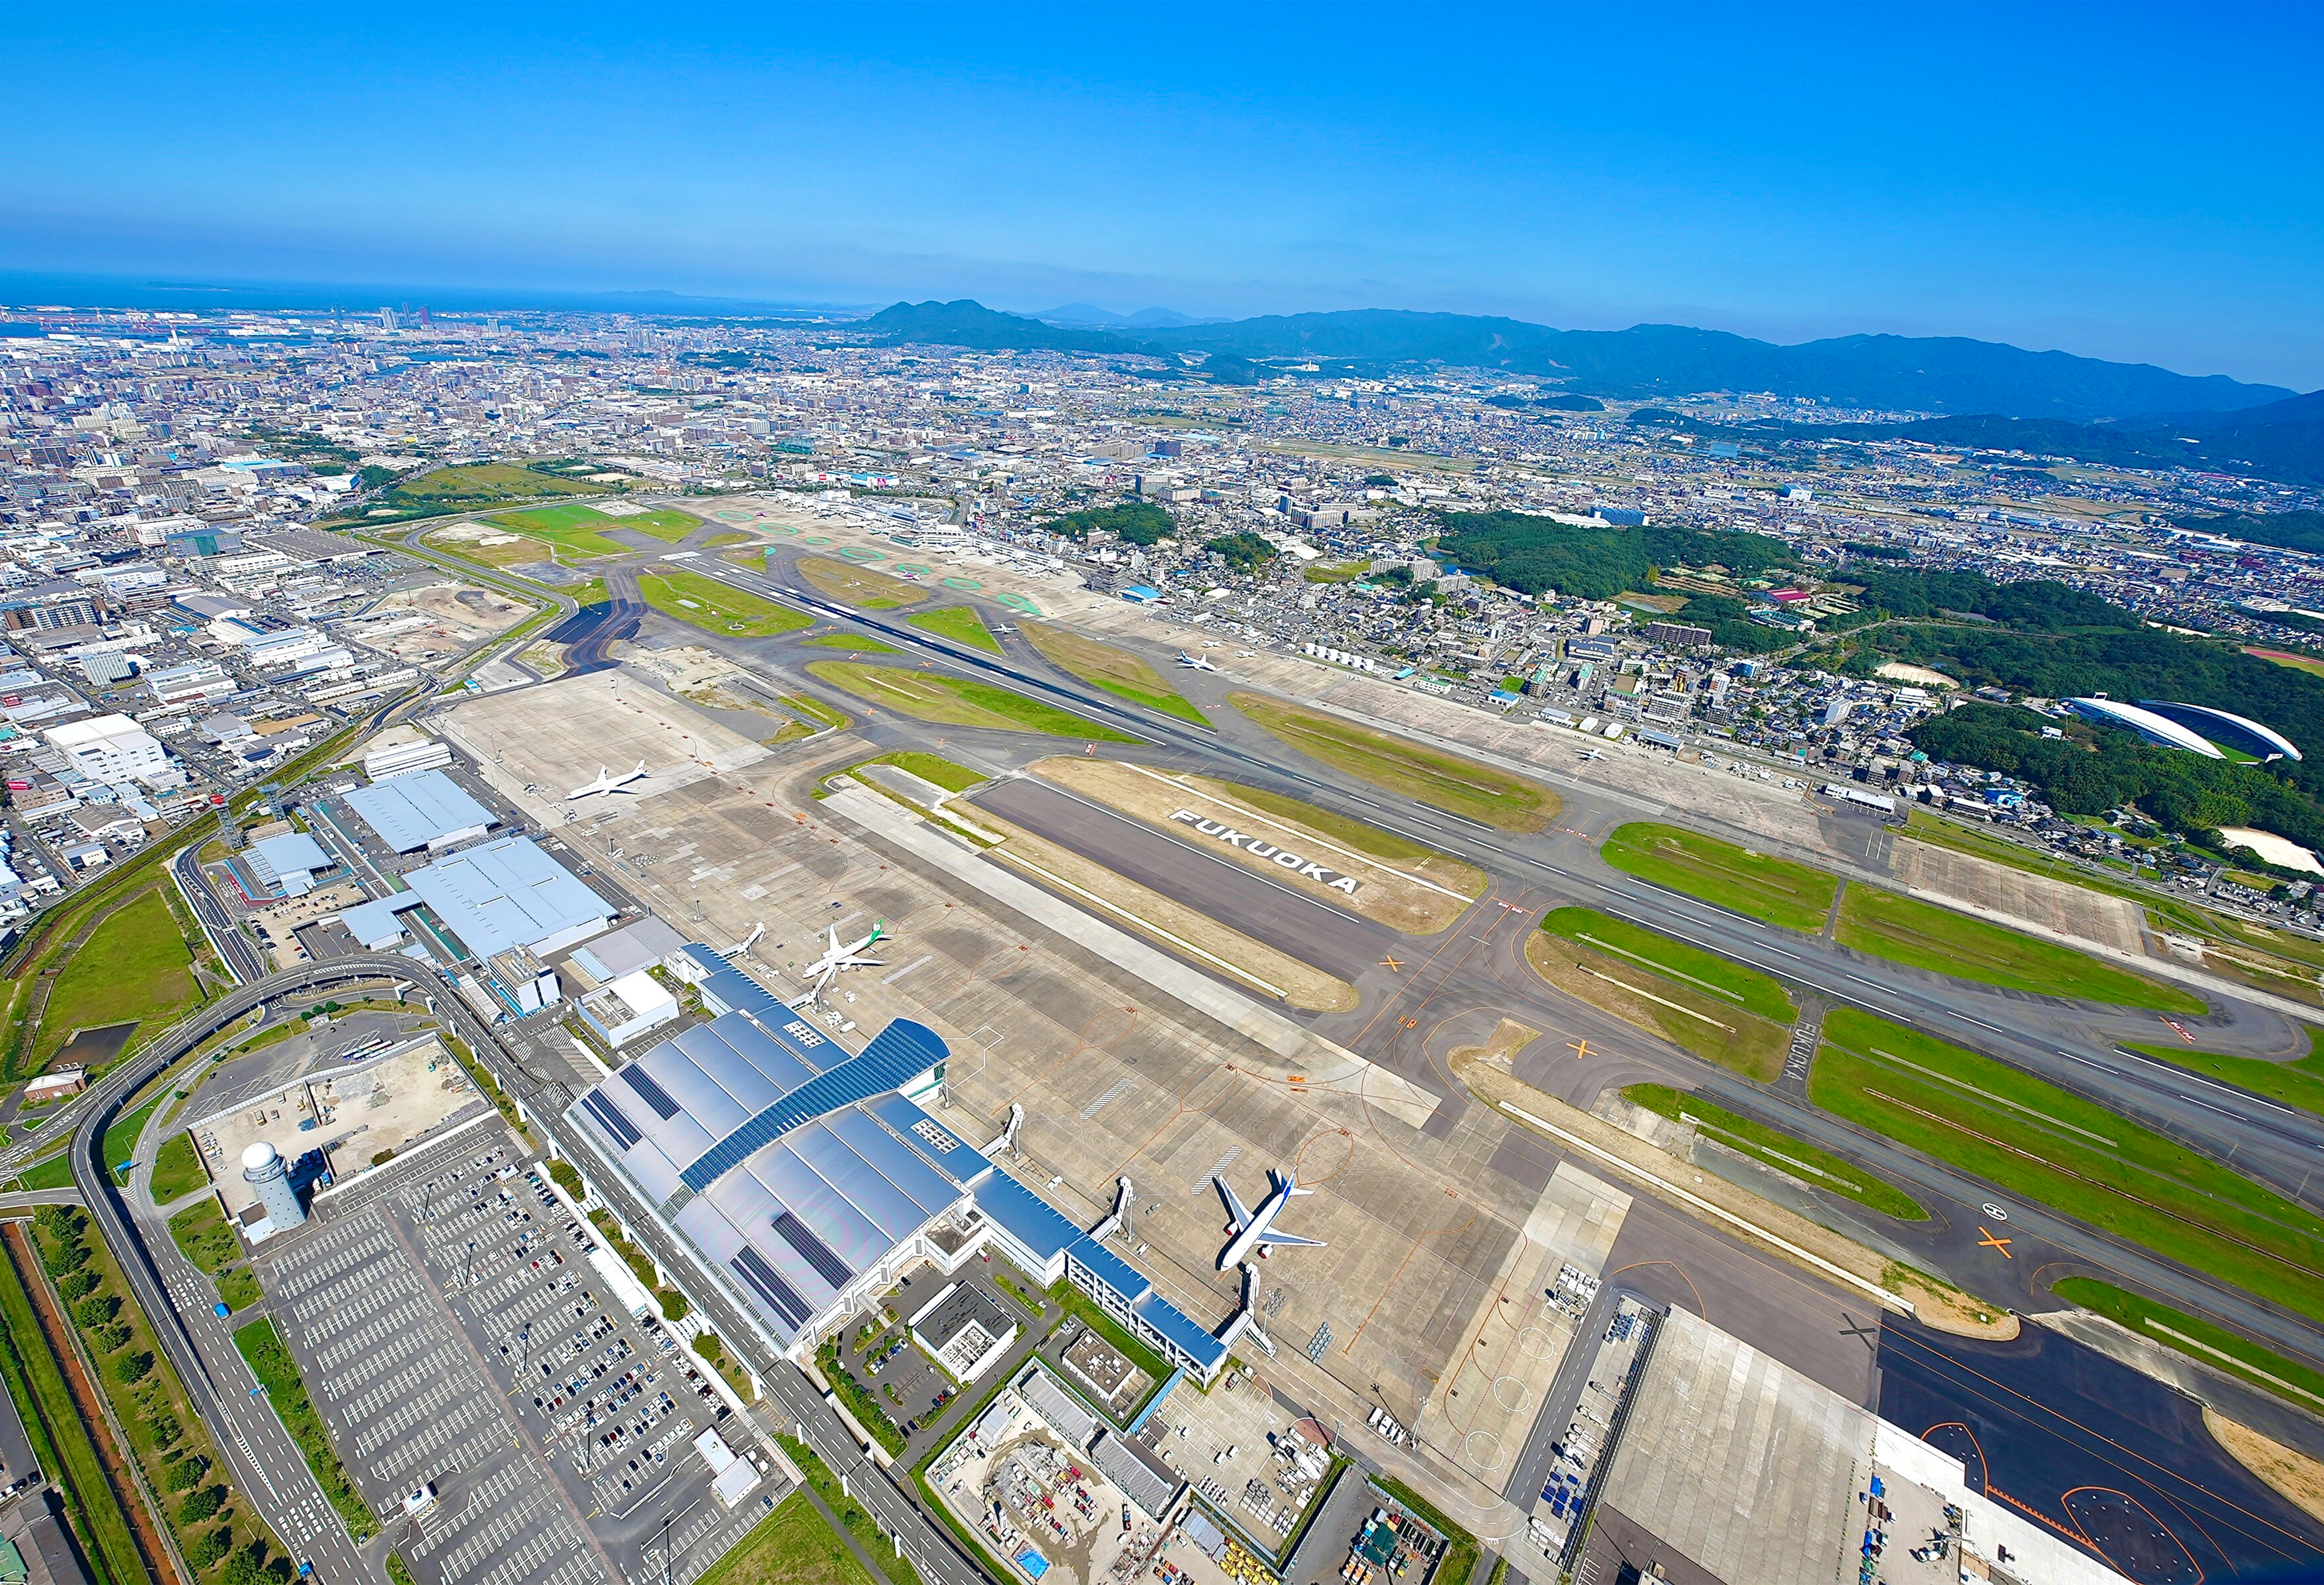 福岡空港が一つの“街”になっていく――。30年先の未来図までを徹底取材！